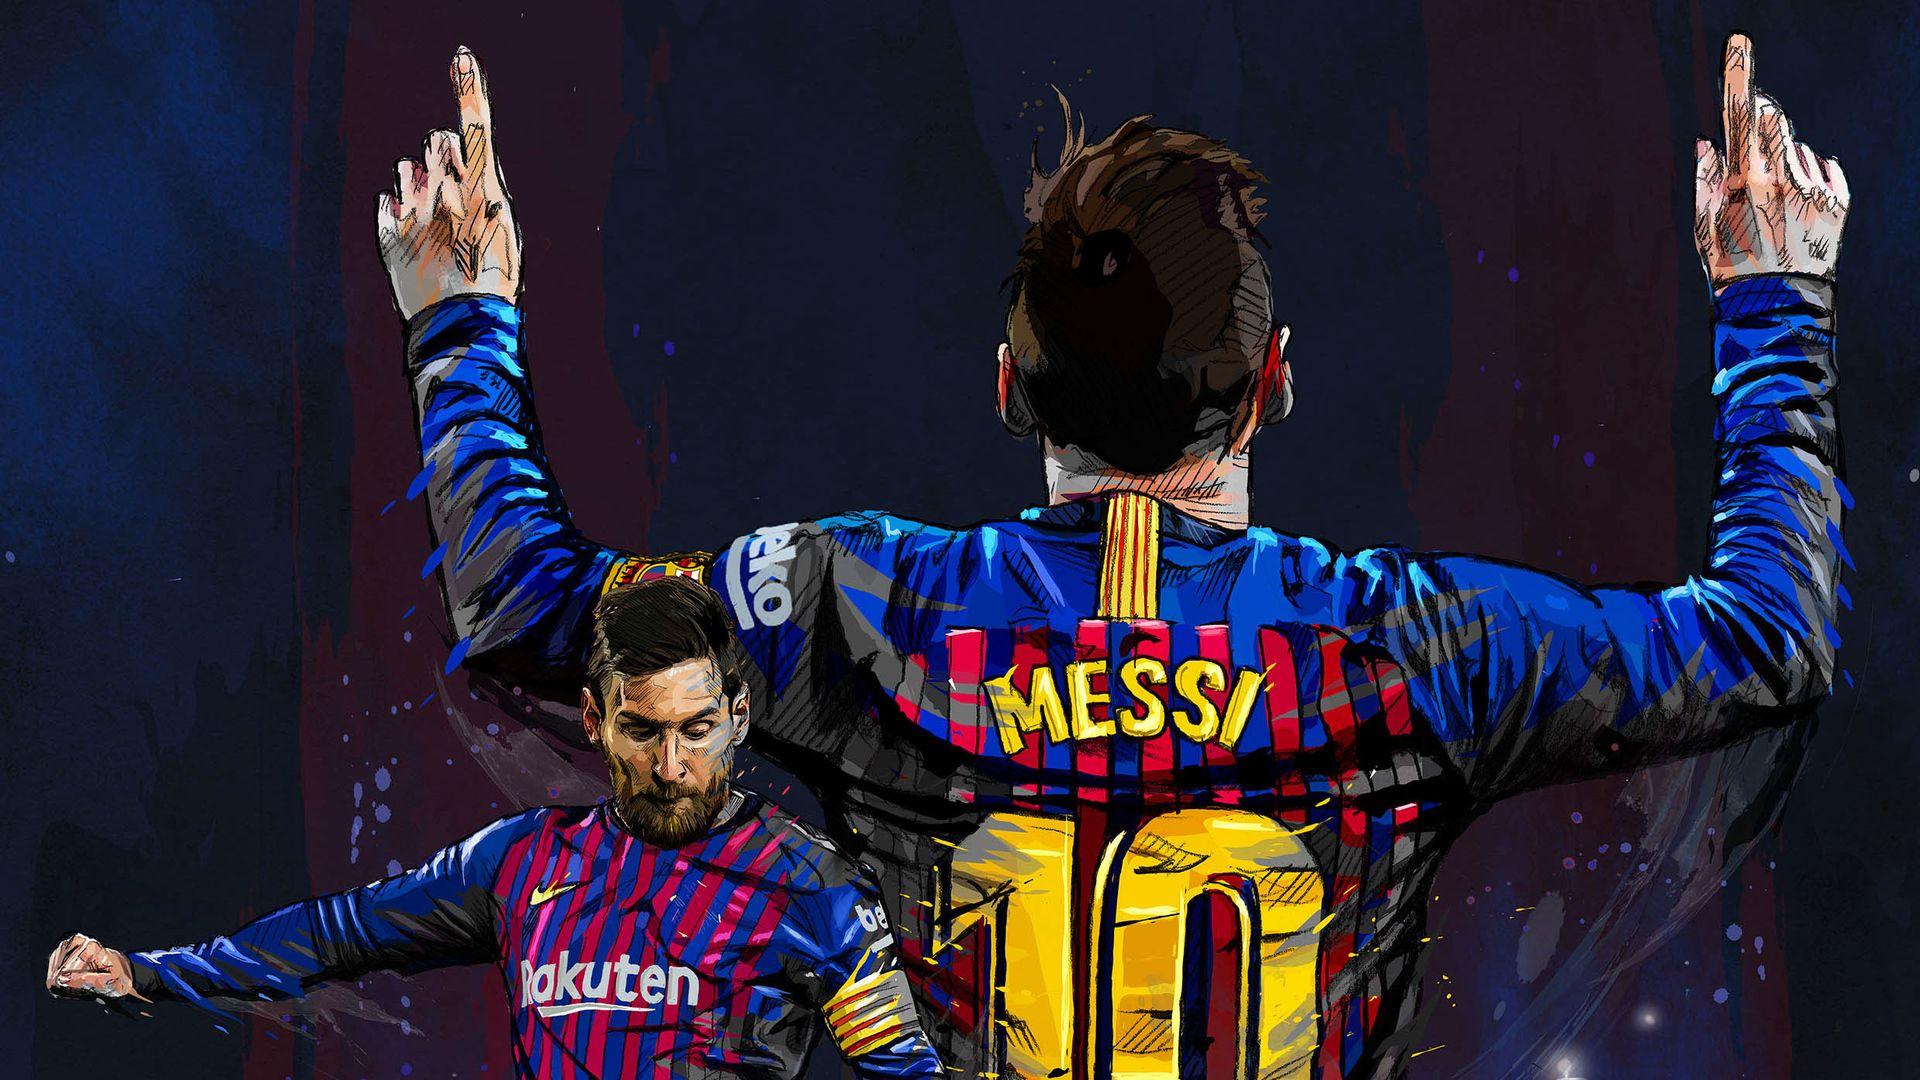 Thiết bị của bạn đang cần một chút đổi mới? Hãy cài đặt ngay hình nền Messi Laptop Wallpapers này và cảm nhận sự mạnh mẽ của cầu thủ người Argentina. Bạn sẽ không thể khỏi khen ngợi vị đại ca Barca này!